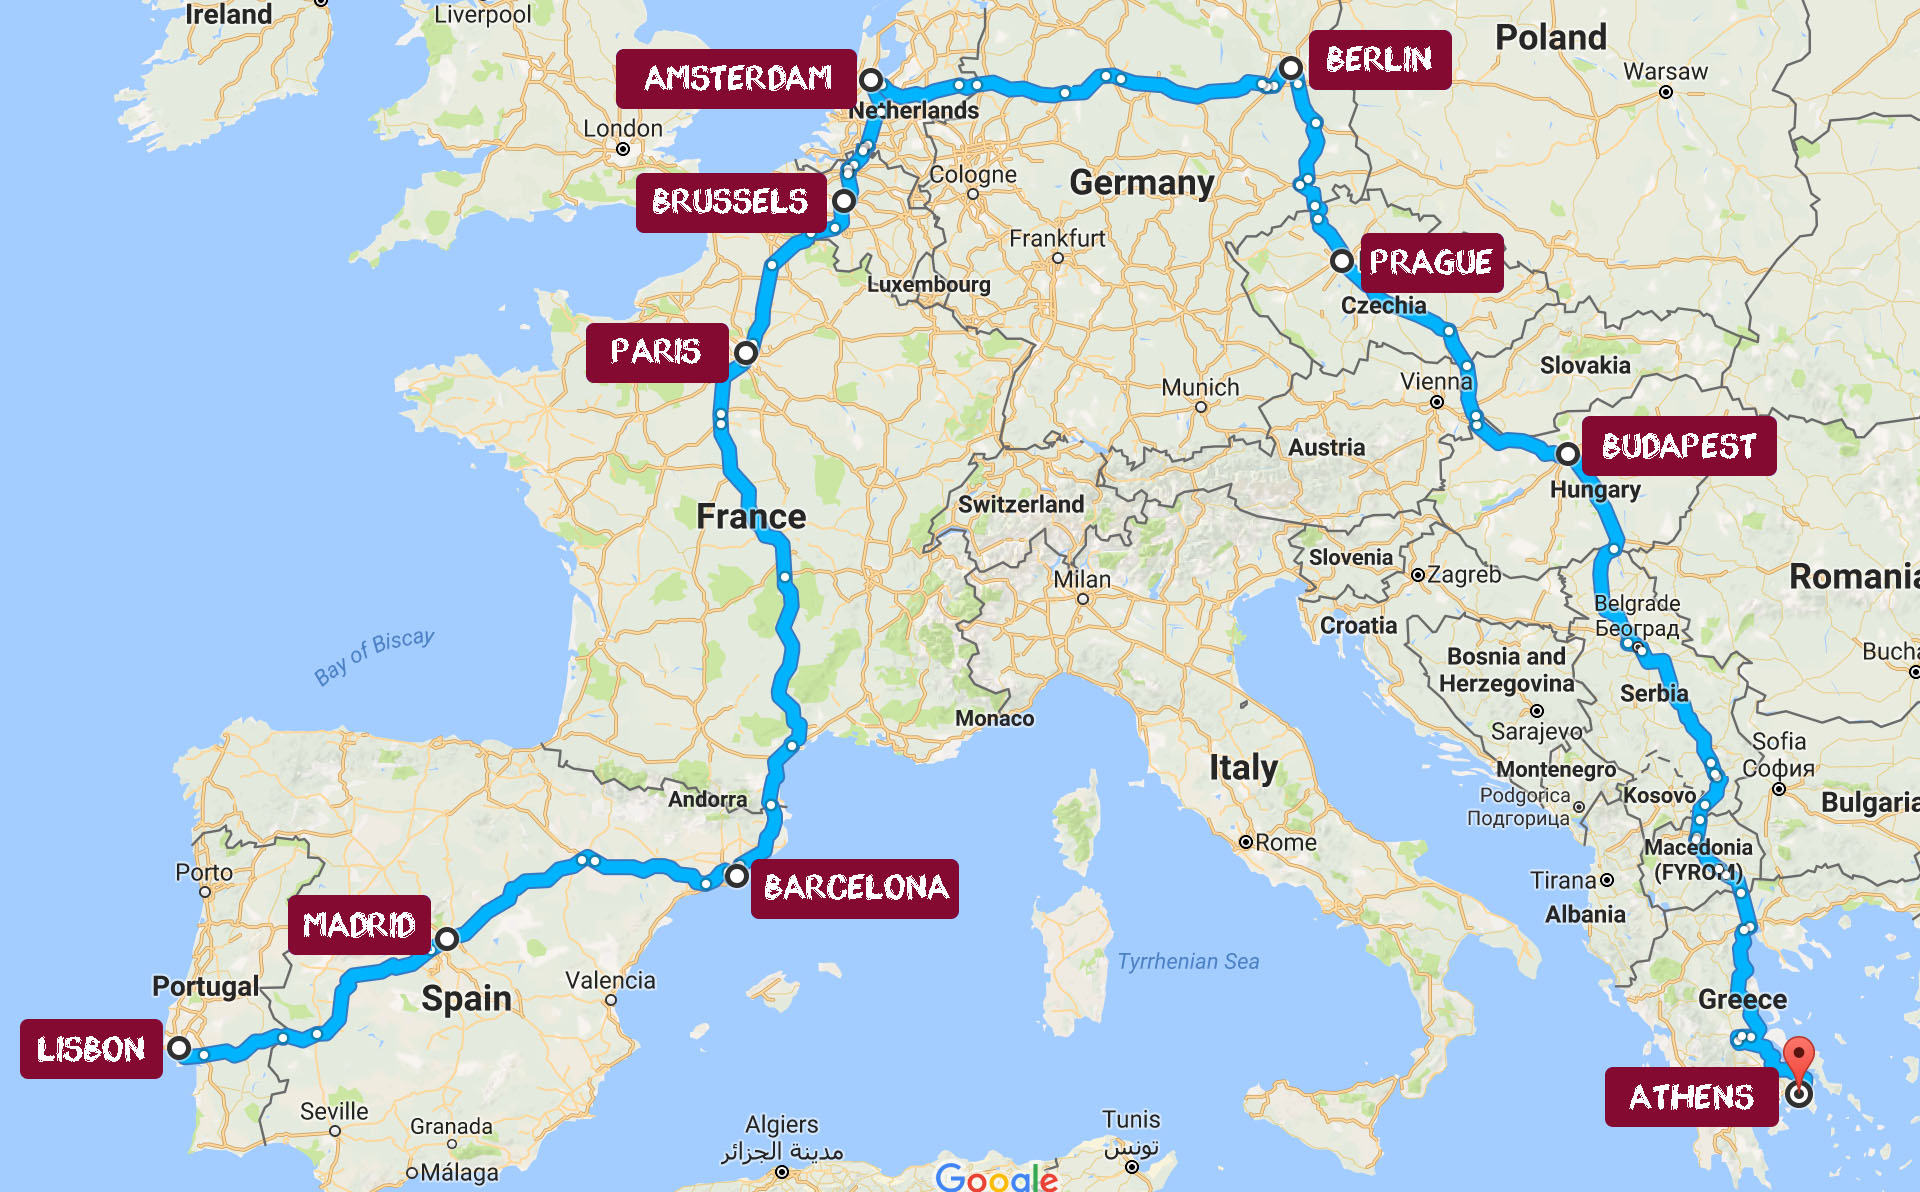 interrailing trip around europe